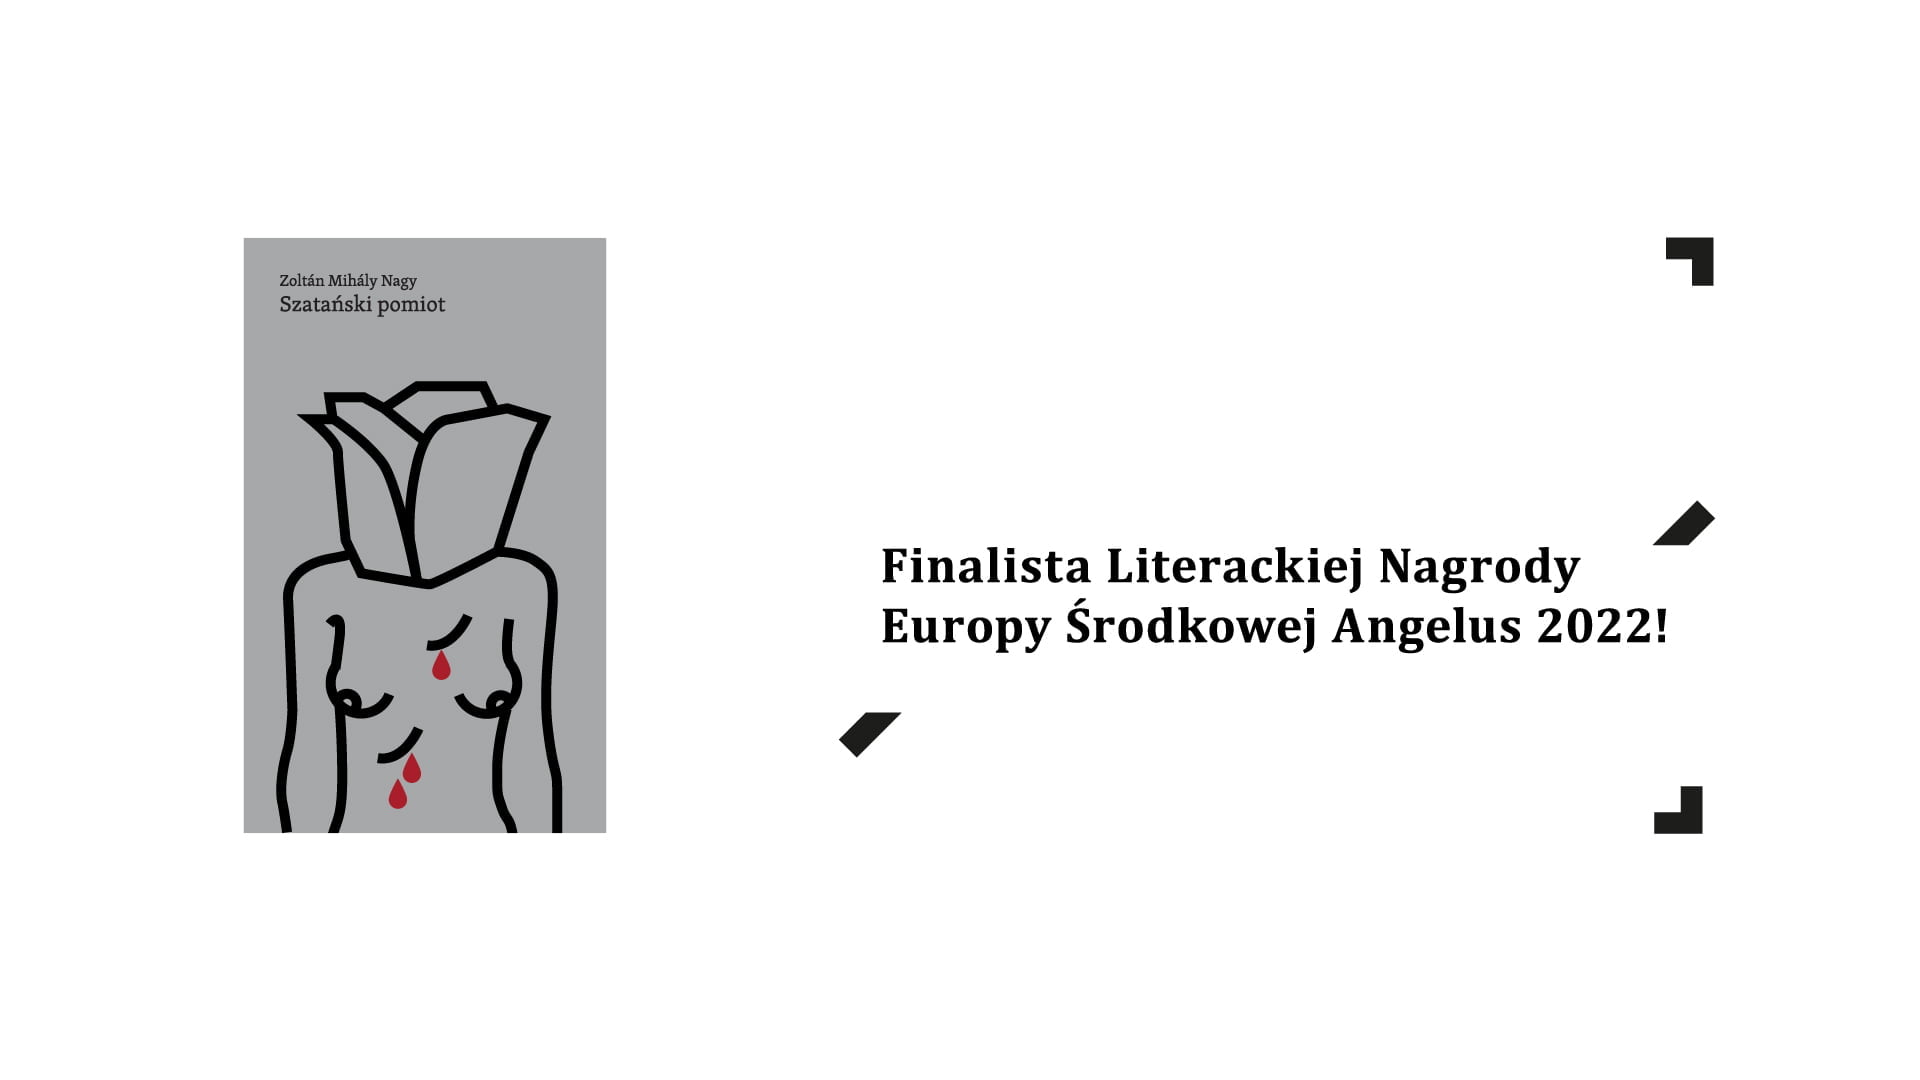 Okładka książki "Szatański pomiot" i napis: Finalista Literackiej Nagrody Europy Środkowej Angelus 2022!